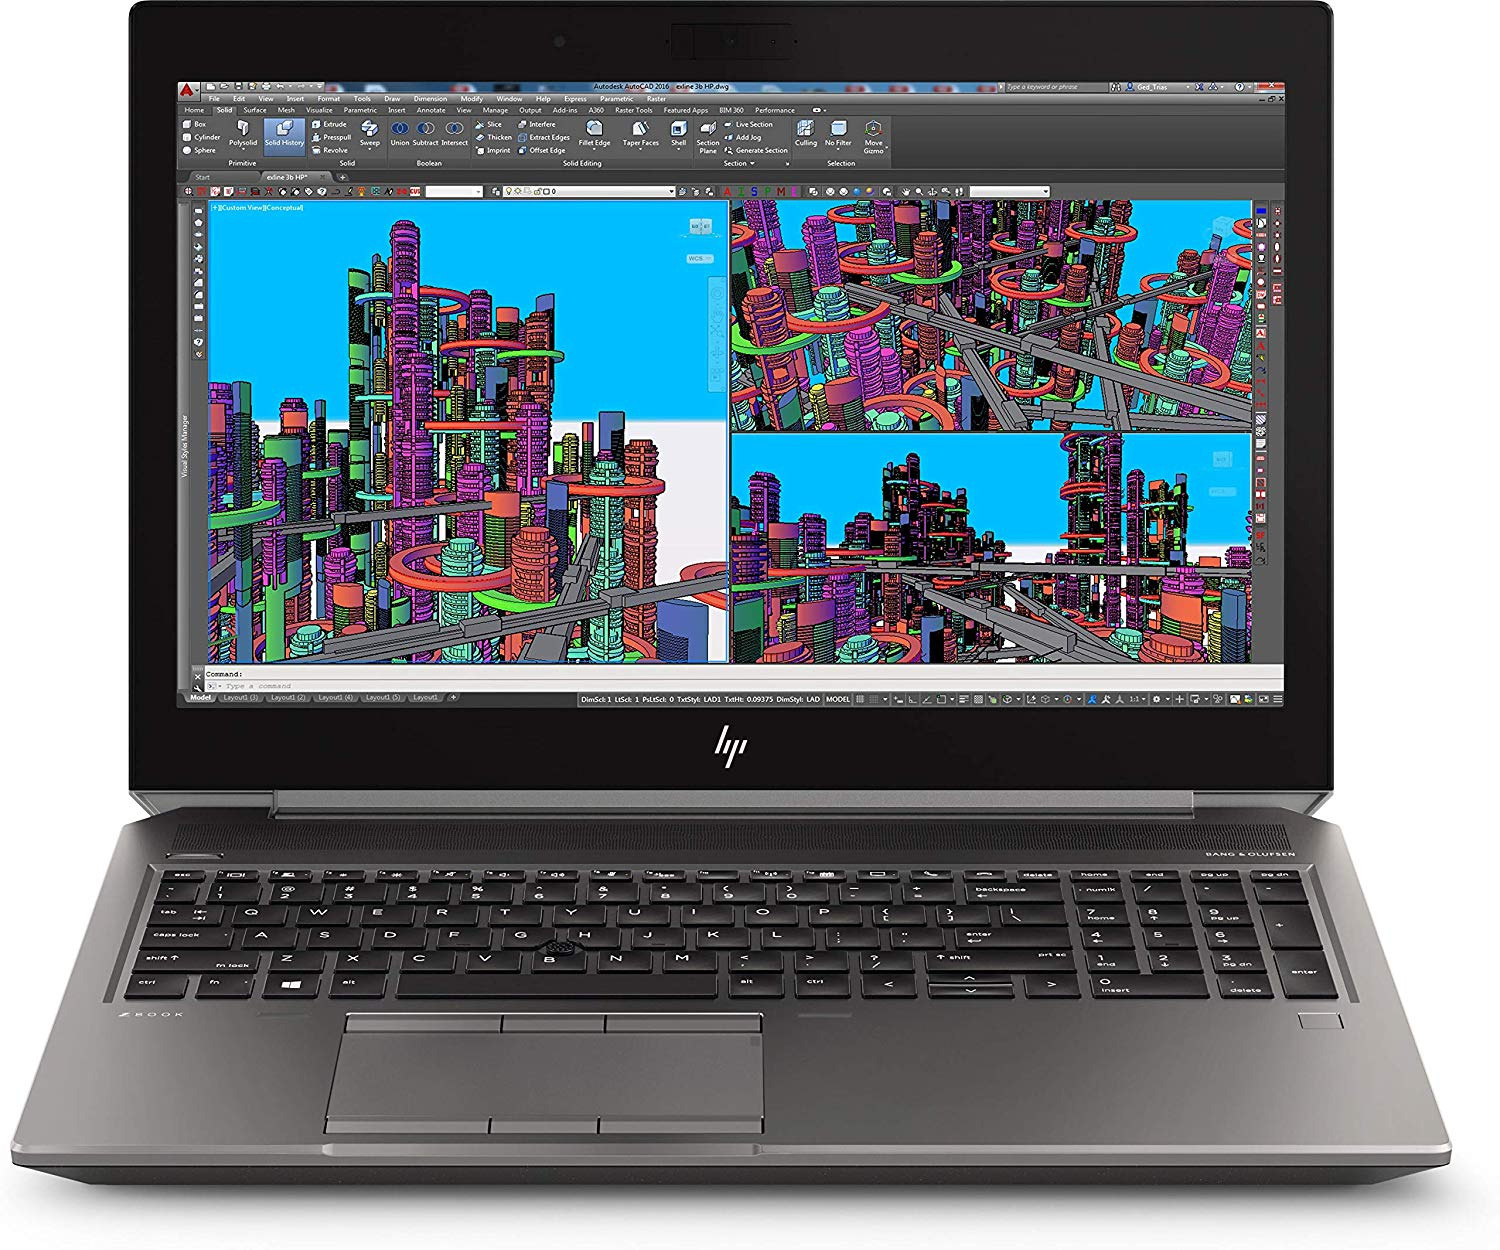 Chiếc Laptop HP Zbook G5 với thiết kế kiểu cũ được ra mắt năm 2019